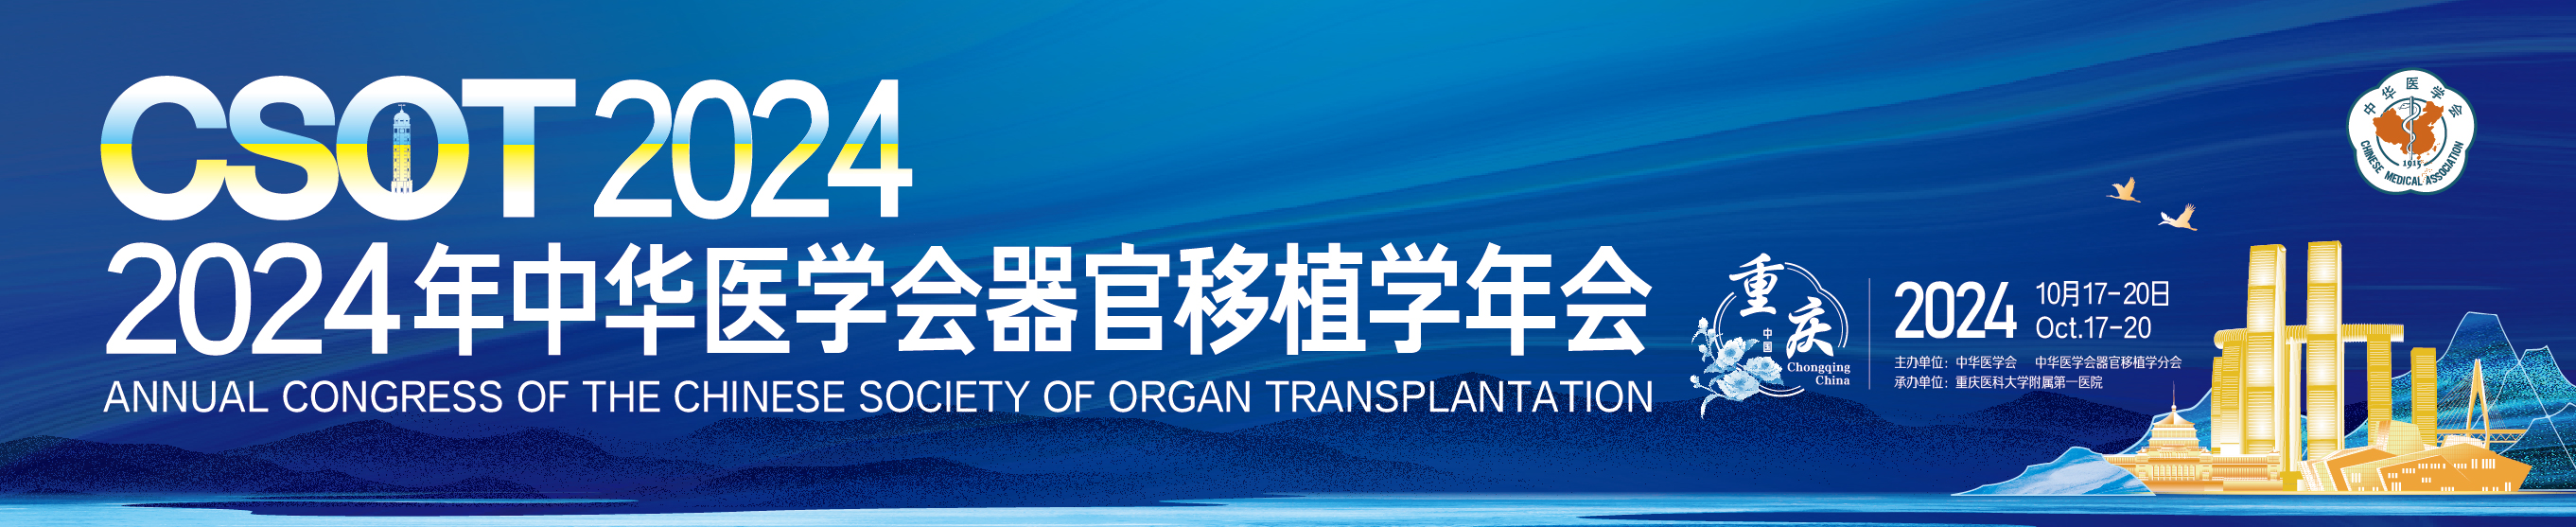 2024年中华医学会器官移植学年会